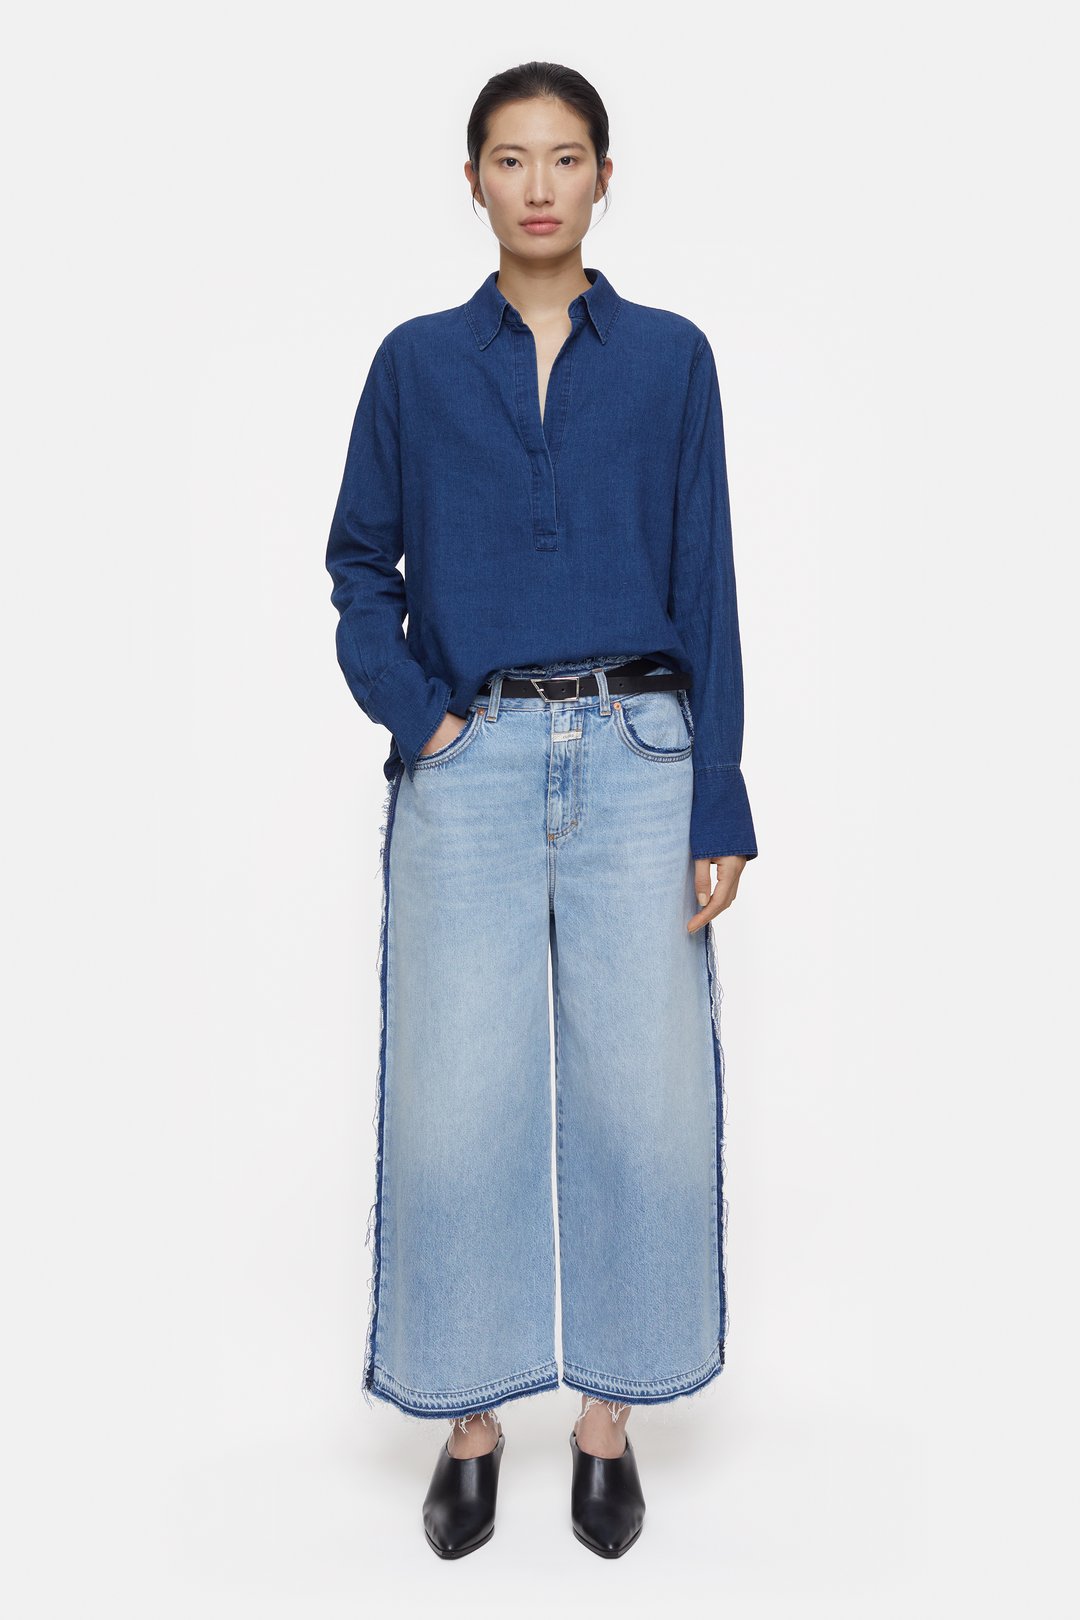 Denim Tunic - Light denim blue - Ladies | H&M US